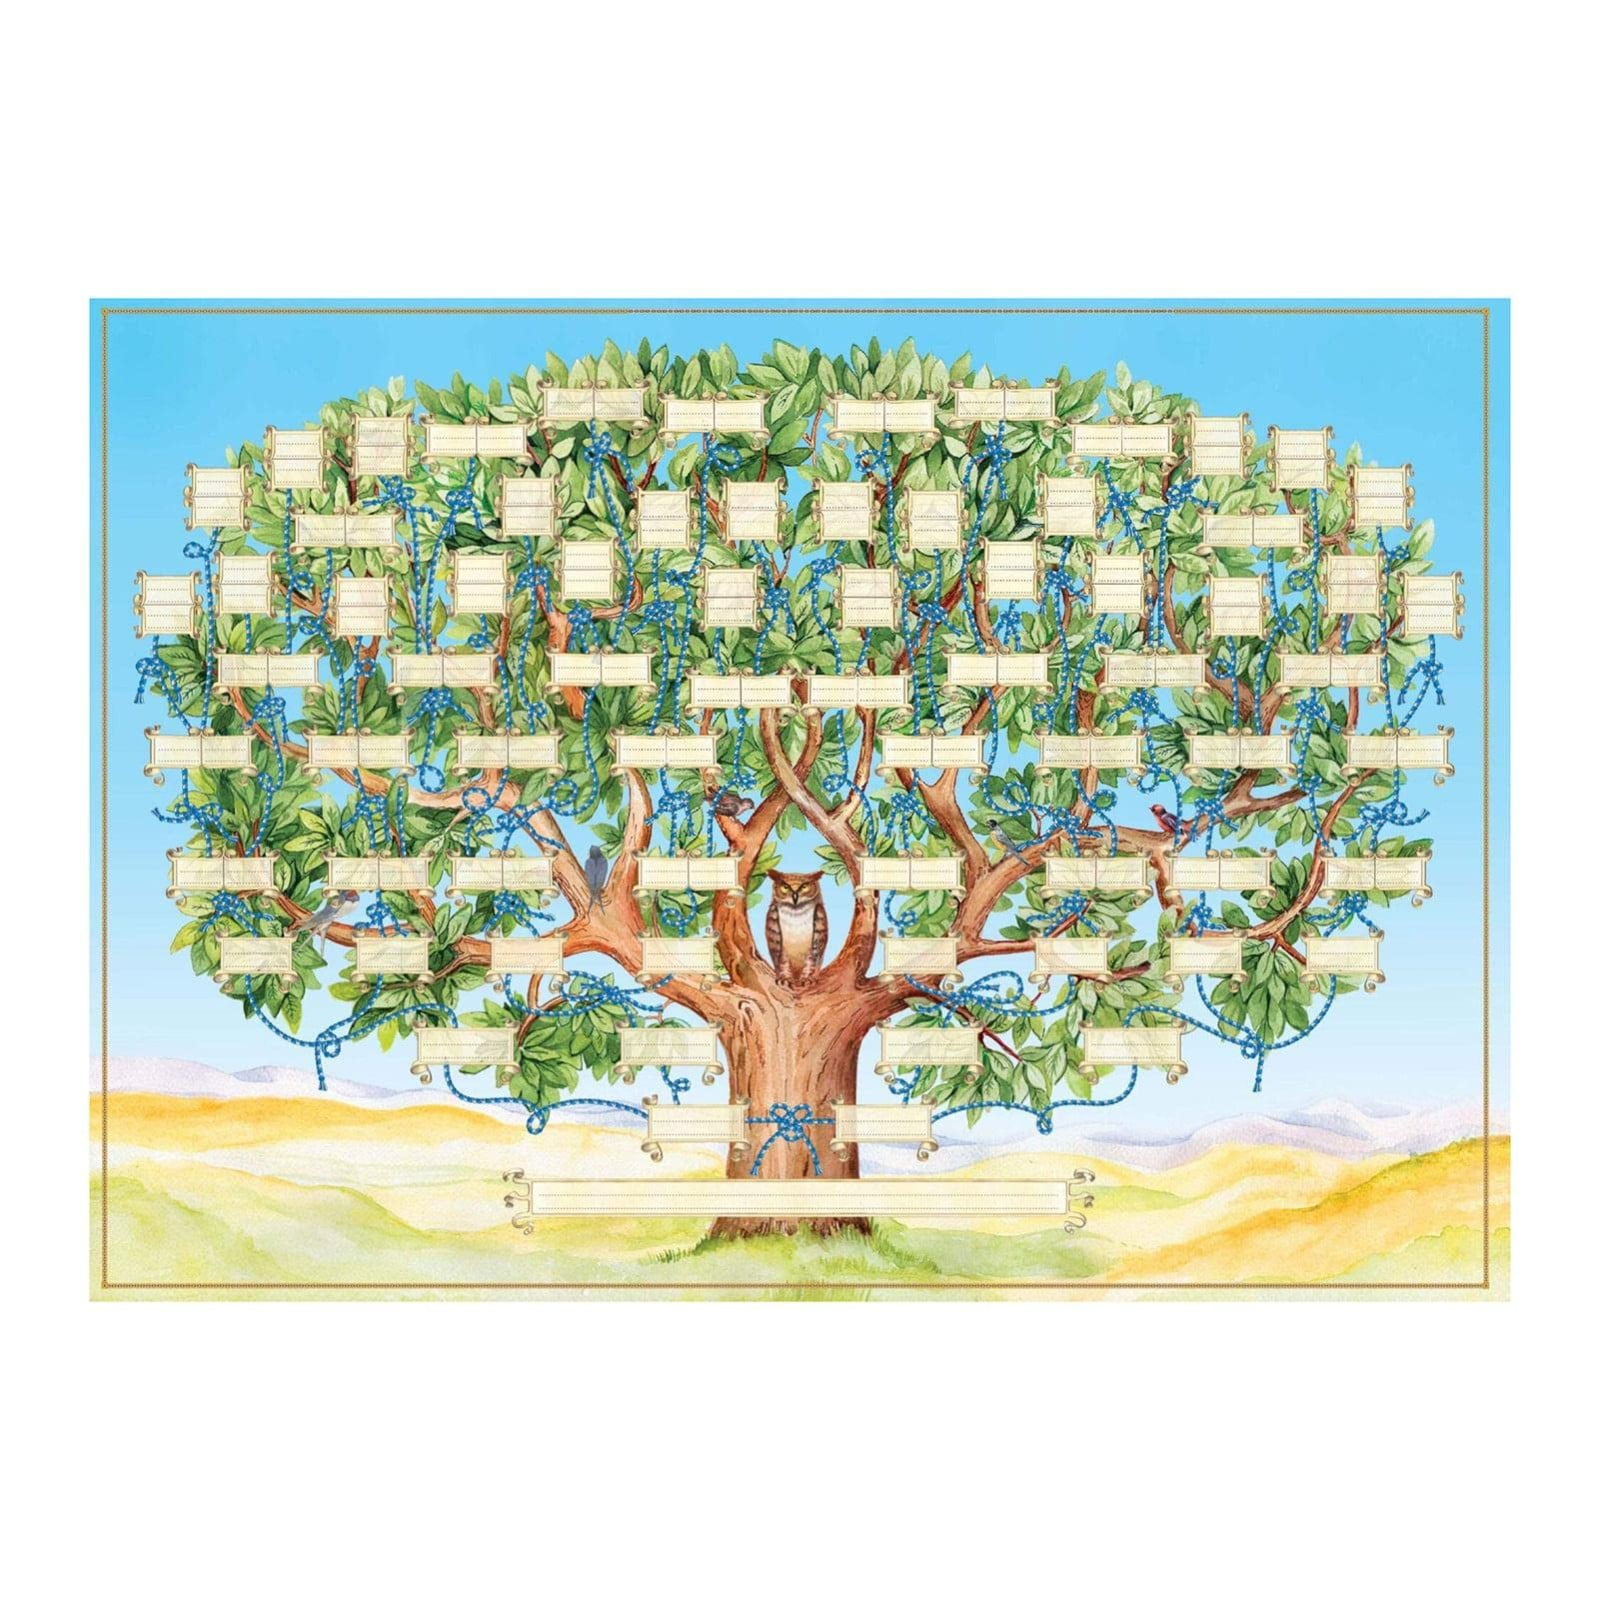 Genealogy Treasure Chest Family Tree 2Pack 11x17 6 Generation Family T —  CHIMIYA